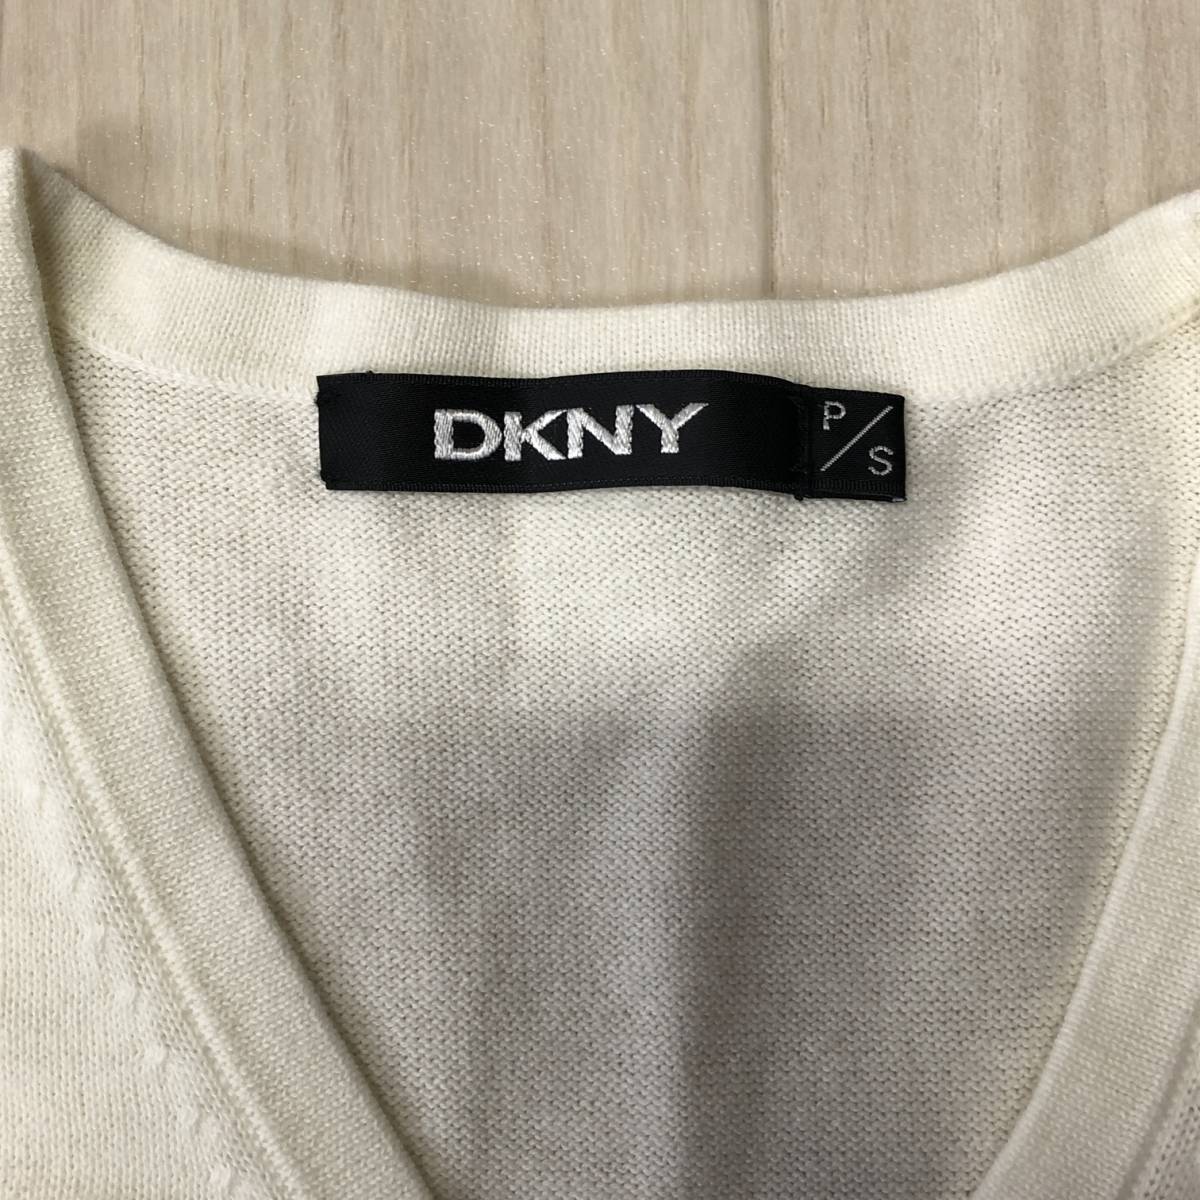 Y0493 DKNY ディーケーエヌワイ レディース アンサンブル キャミソール カーディガン 薄手 サイズ36 S ホワイト 白 アイボリー 無地 綿100%_画像5